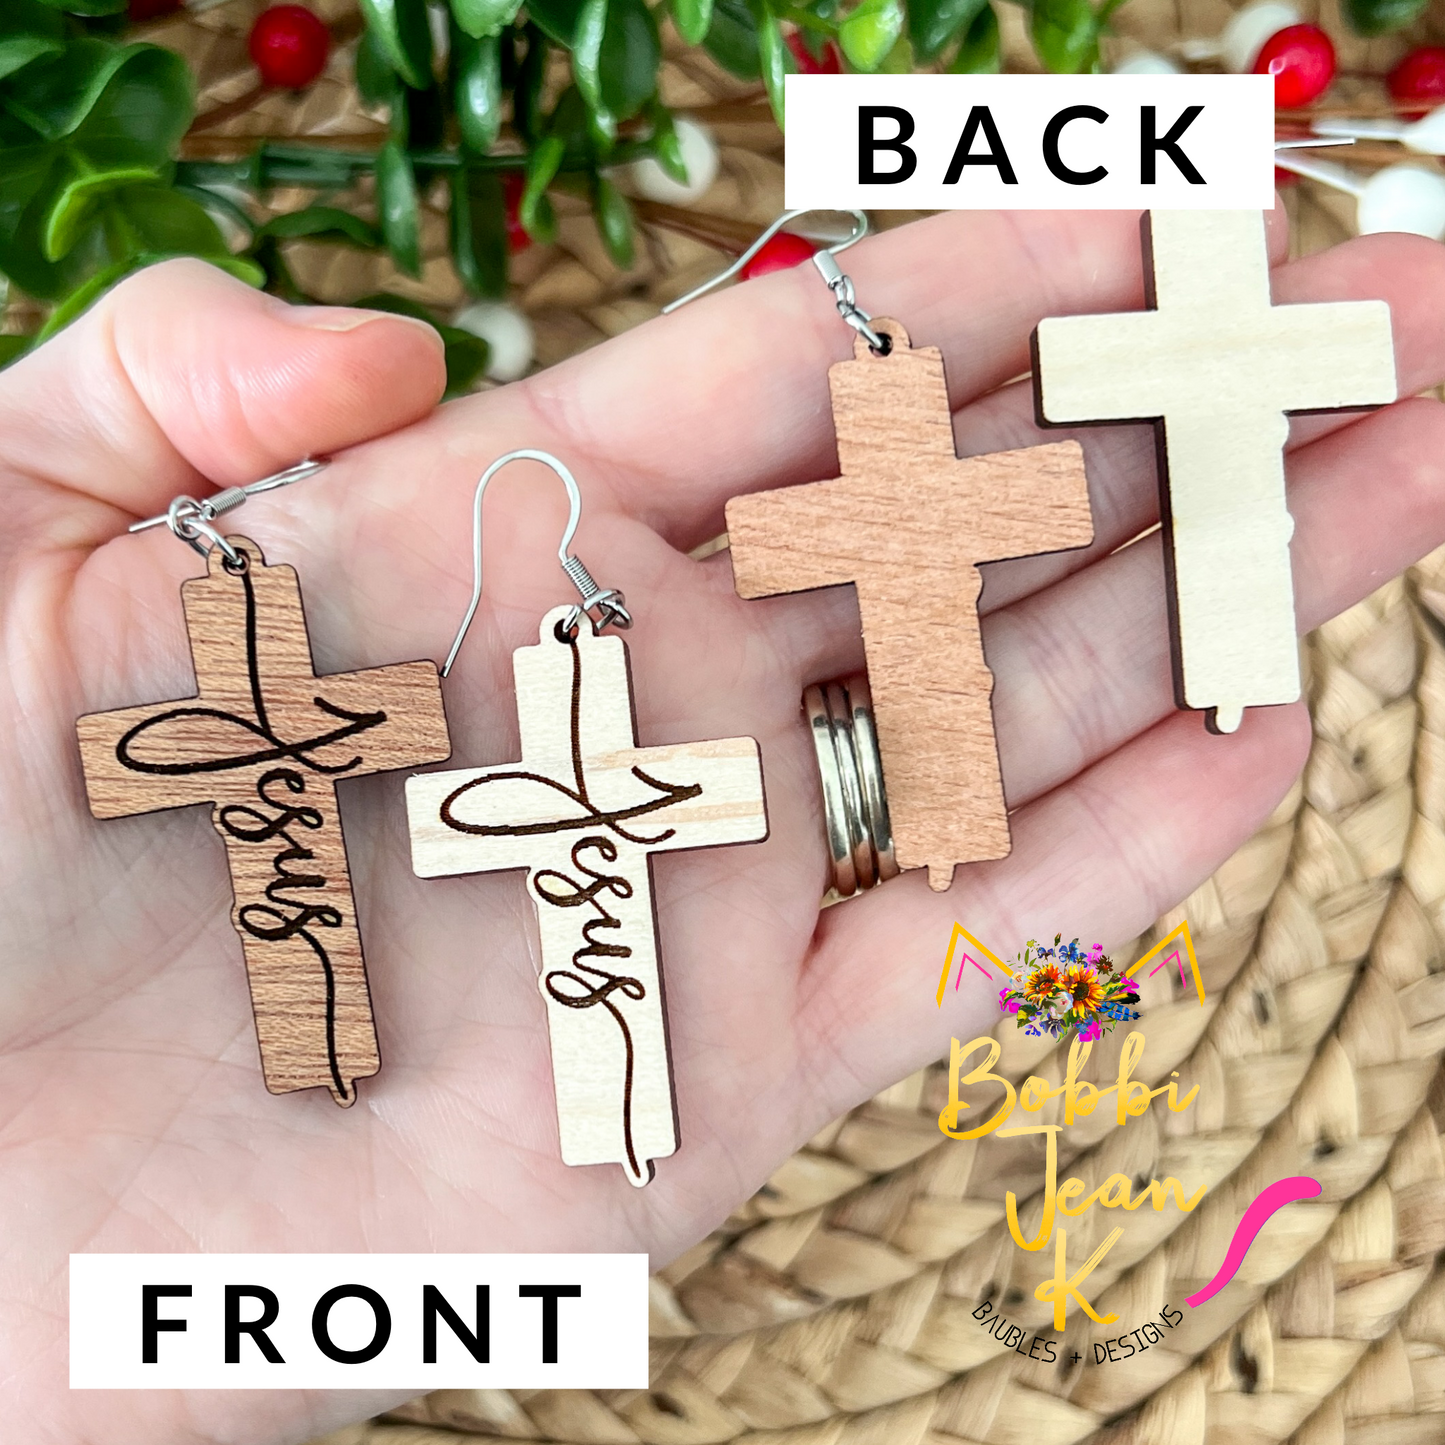 Jesus Engraved Wood Cross Earrings: Choose From 2 Wood Options